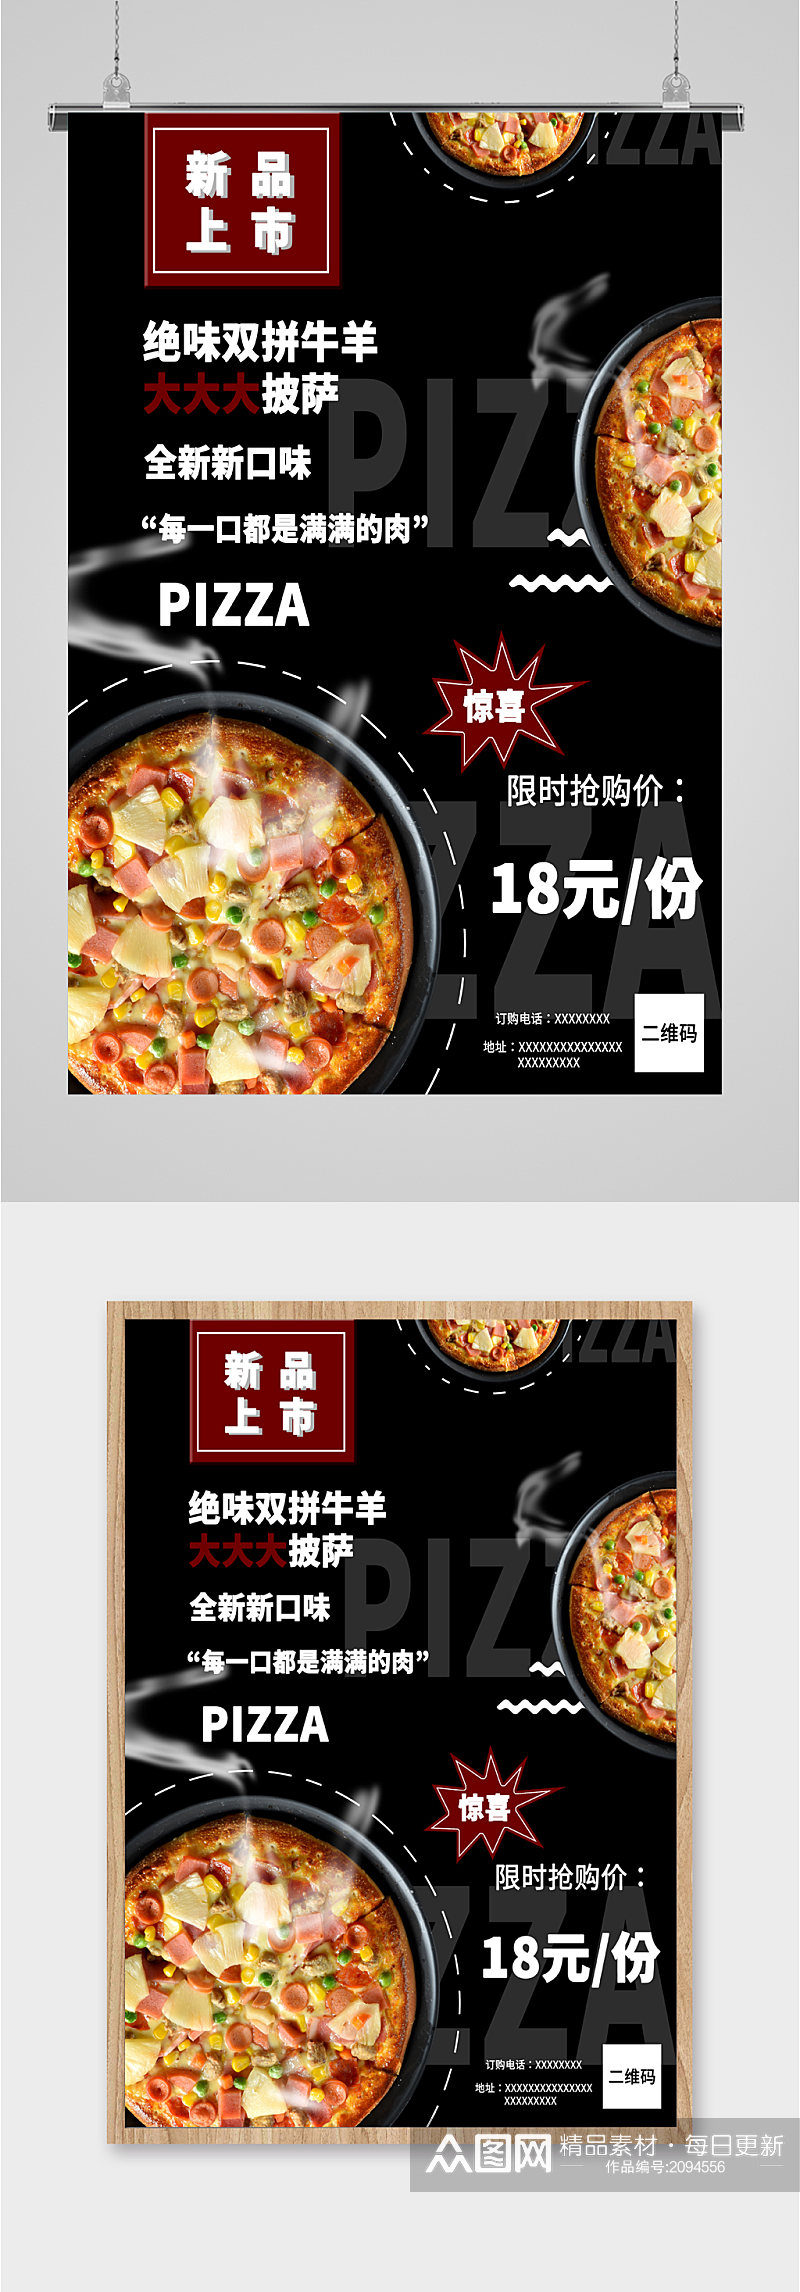 双拼披萨美食海报素材